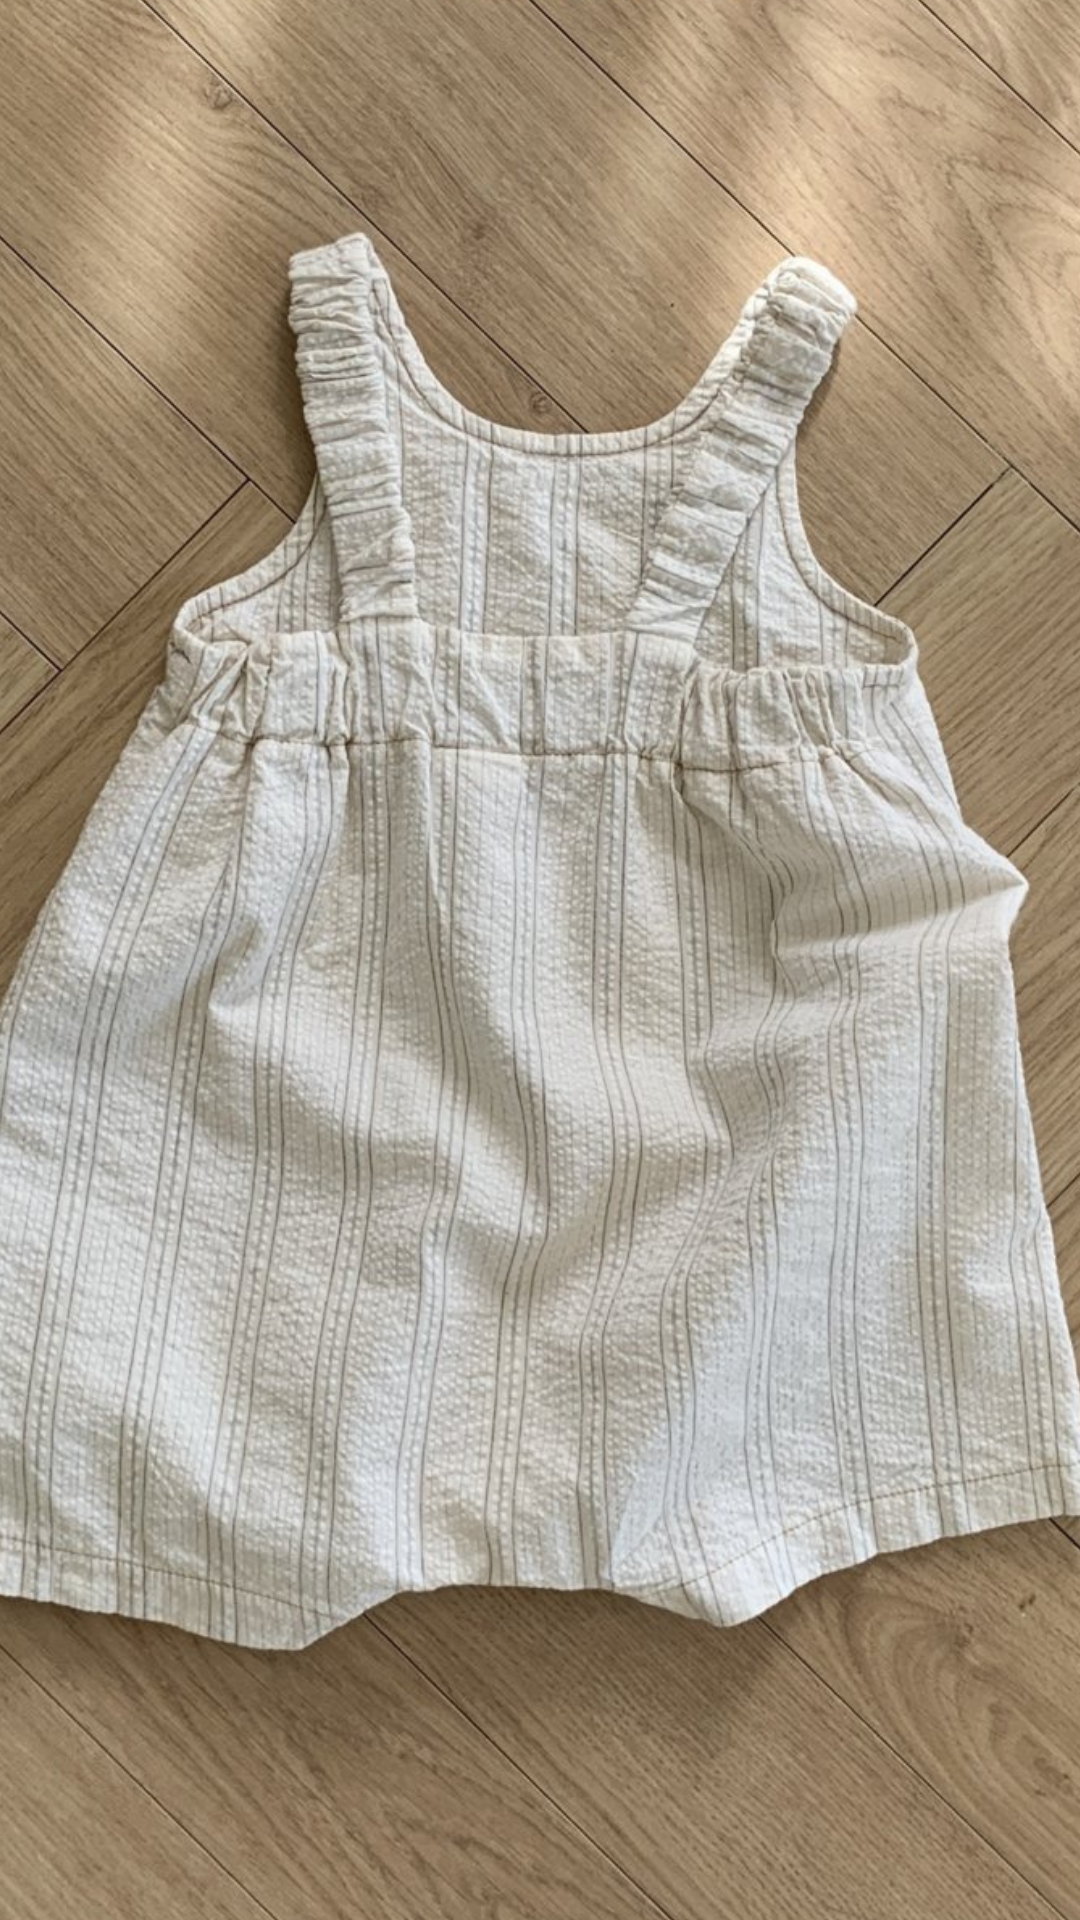 Ein ärmelloses Kleinkinderkleid von Bebe Holic Naturtöne mit dünnen Trägern und einer gerüschten Taille, das flach auf einem Holzboden liegt. Das Kleid hat ein dezentes Karomuster.